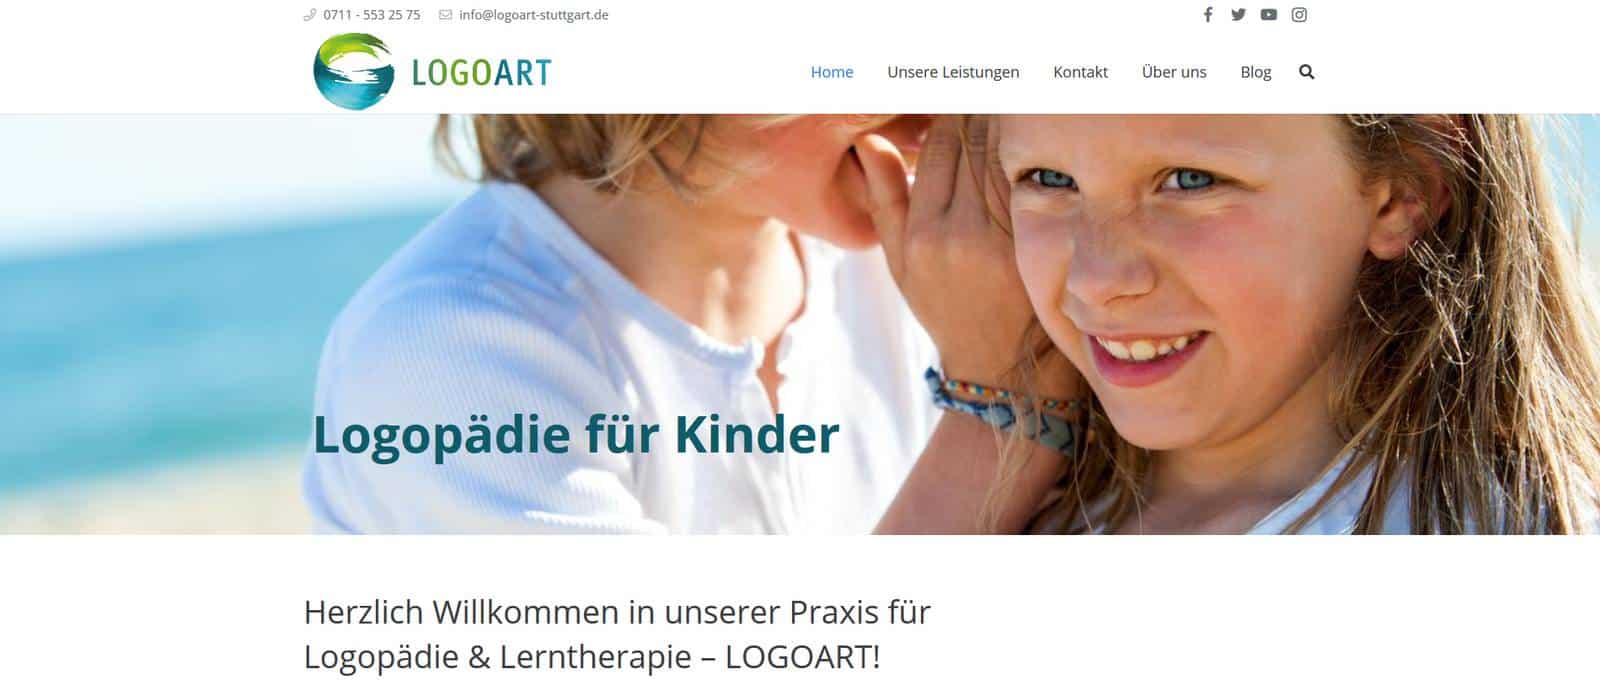 Neuer Internetauftritt der Praxis für Logopädie in Stuttgart